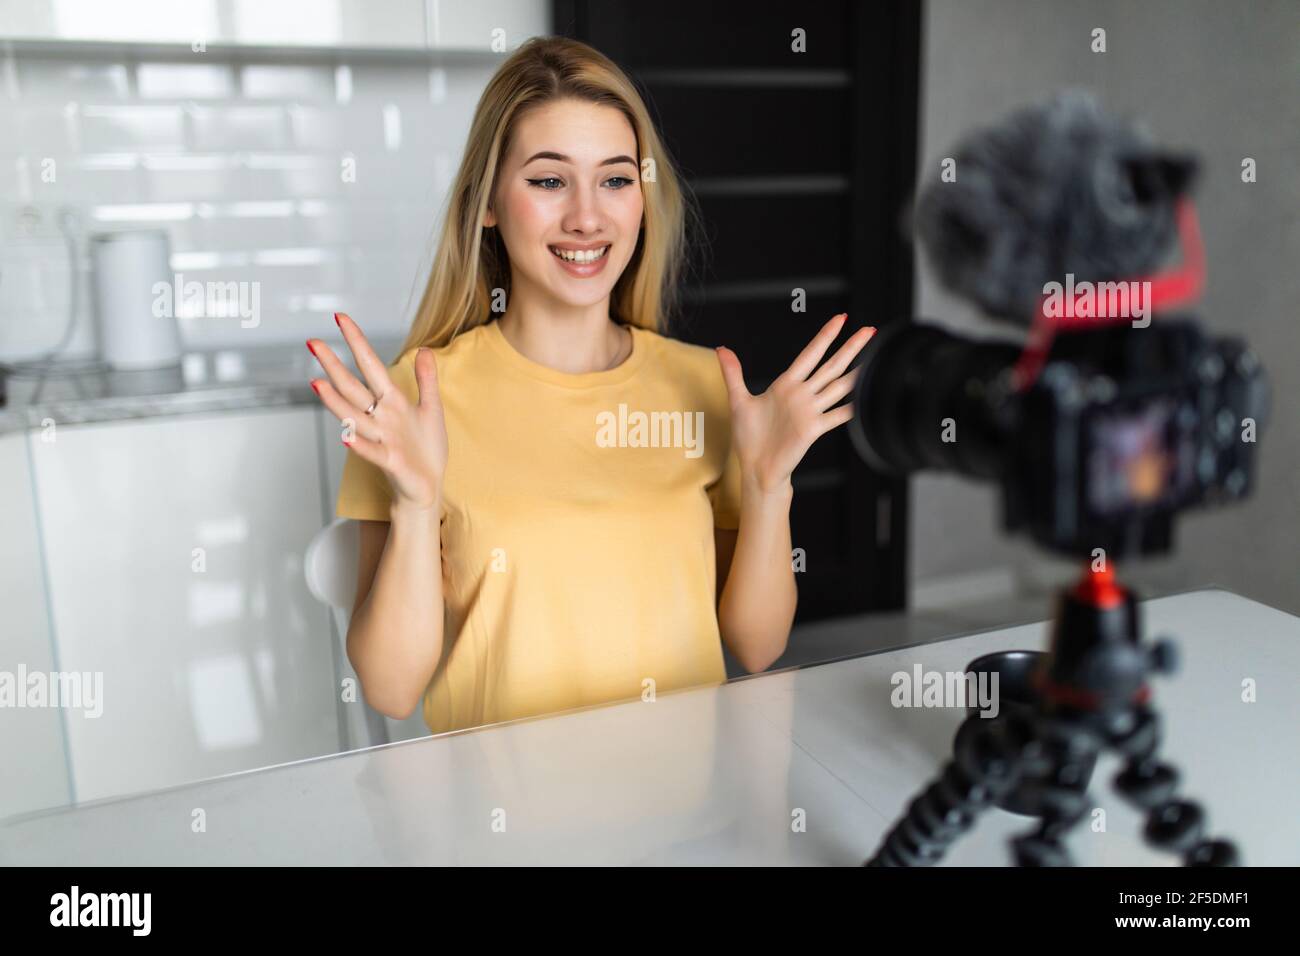 Femme attrayante enregistrant un blog vidéo sur un appareil photo reflex numérique dans la cuisine à la maison Banque D'Images